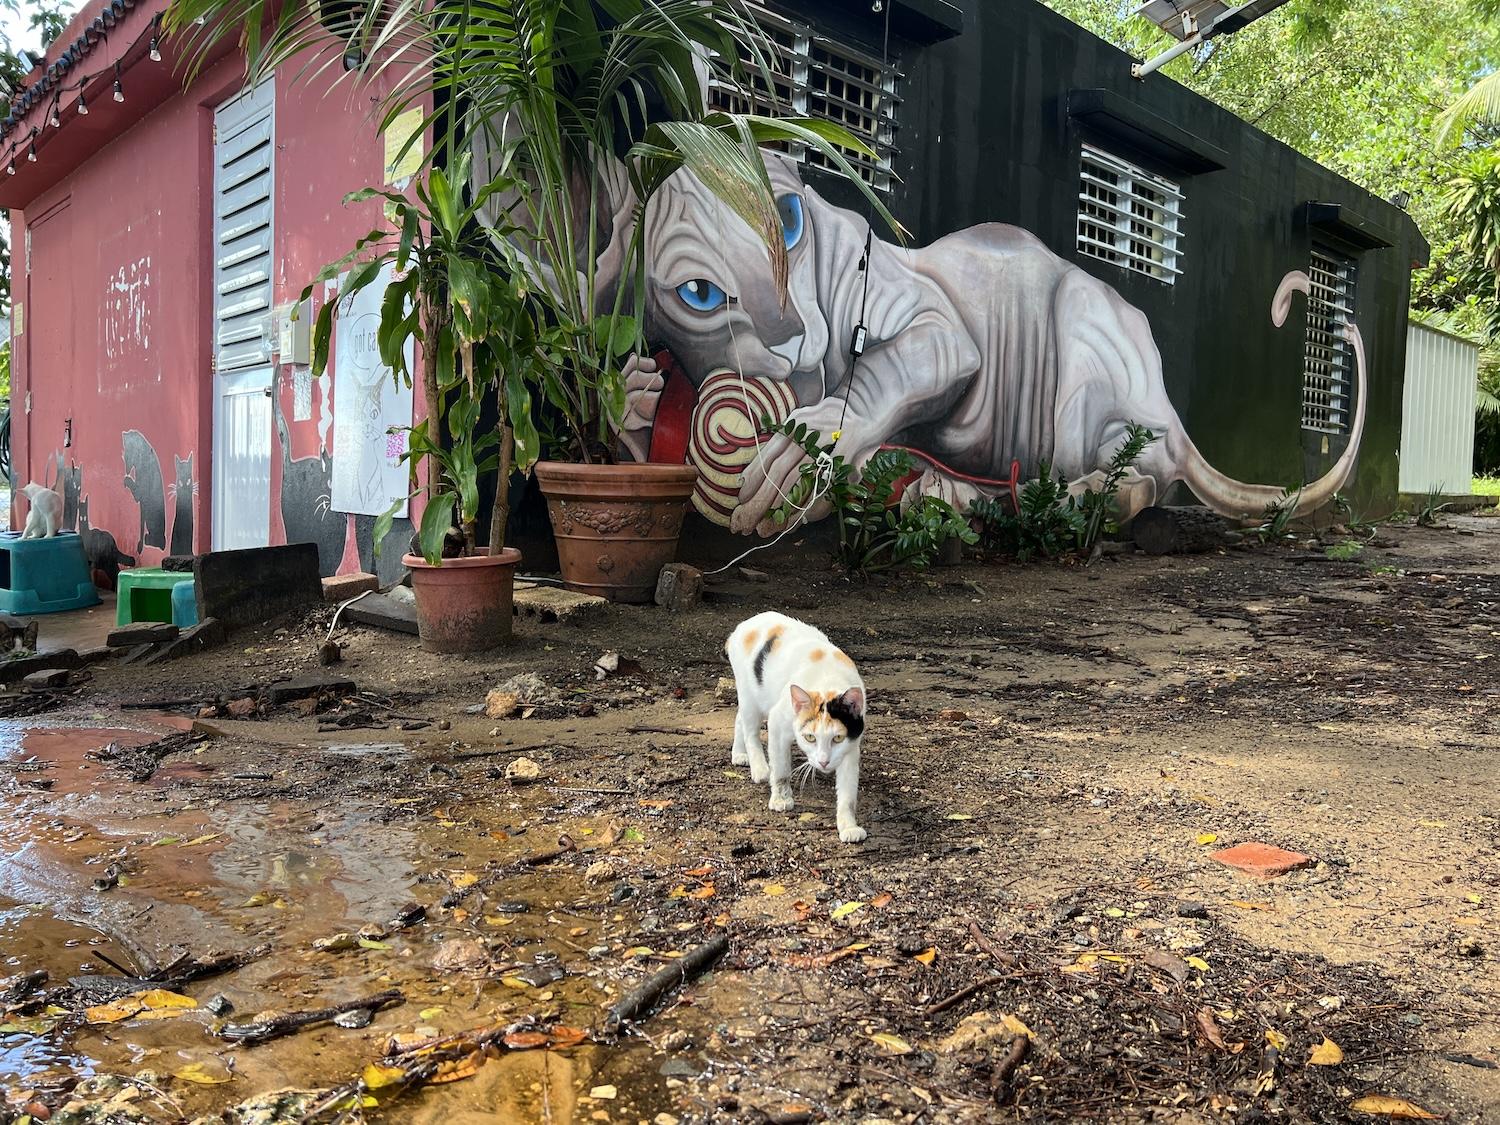 Save A Gato turned a maintenance shack into its headquarters in Old San Juan near the Paseo del Morro and Castillo San Felipe del Morro.